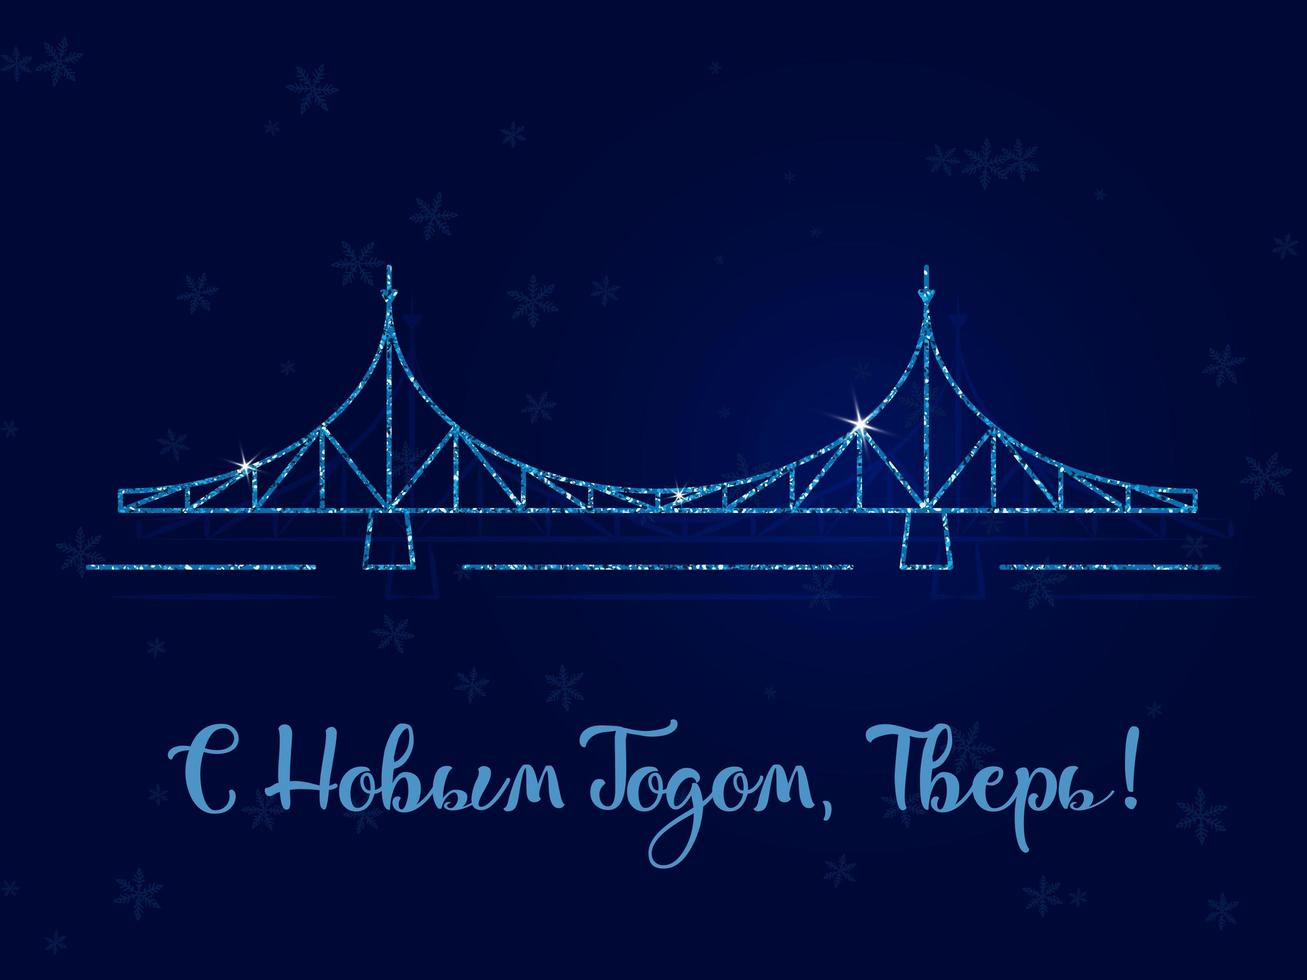 feliz ano novo, tver - a inscrição em russo. a ponte velha é o principal símbolo da cidade. ilustração vetorial. fundo azul escuro com flocos de neve. vetor